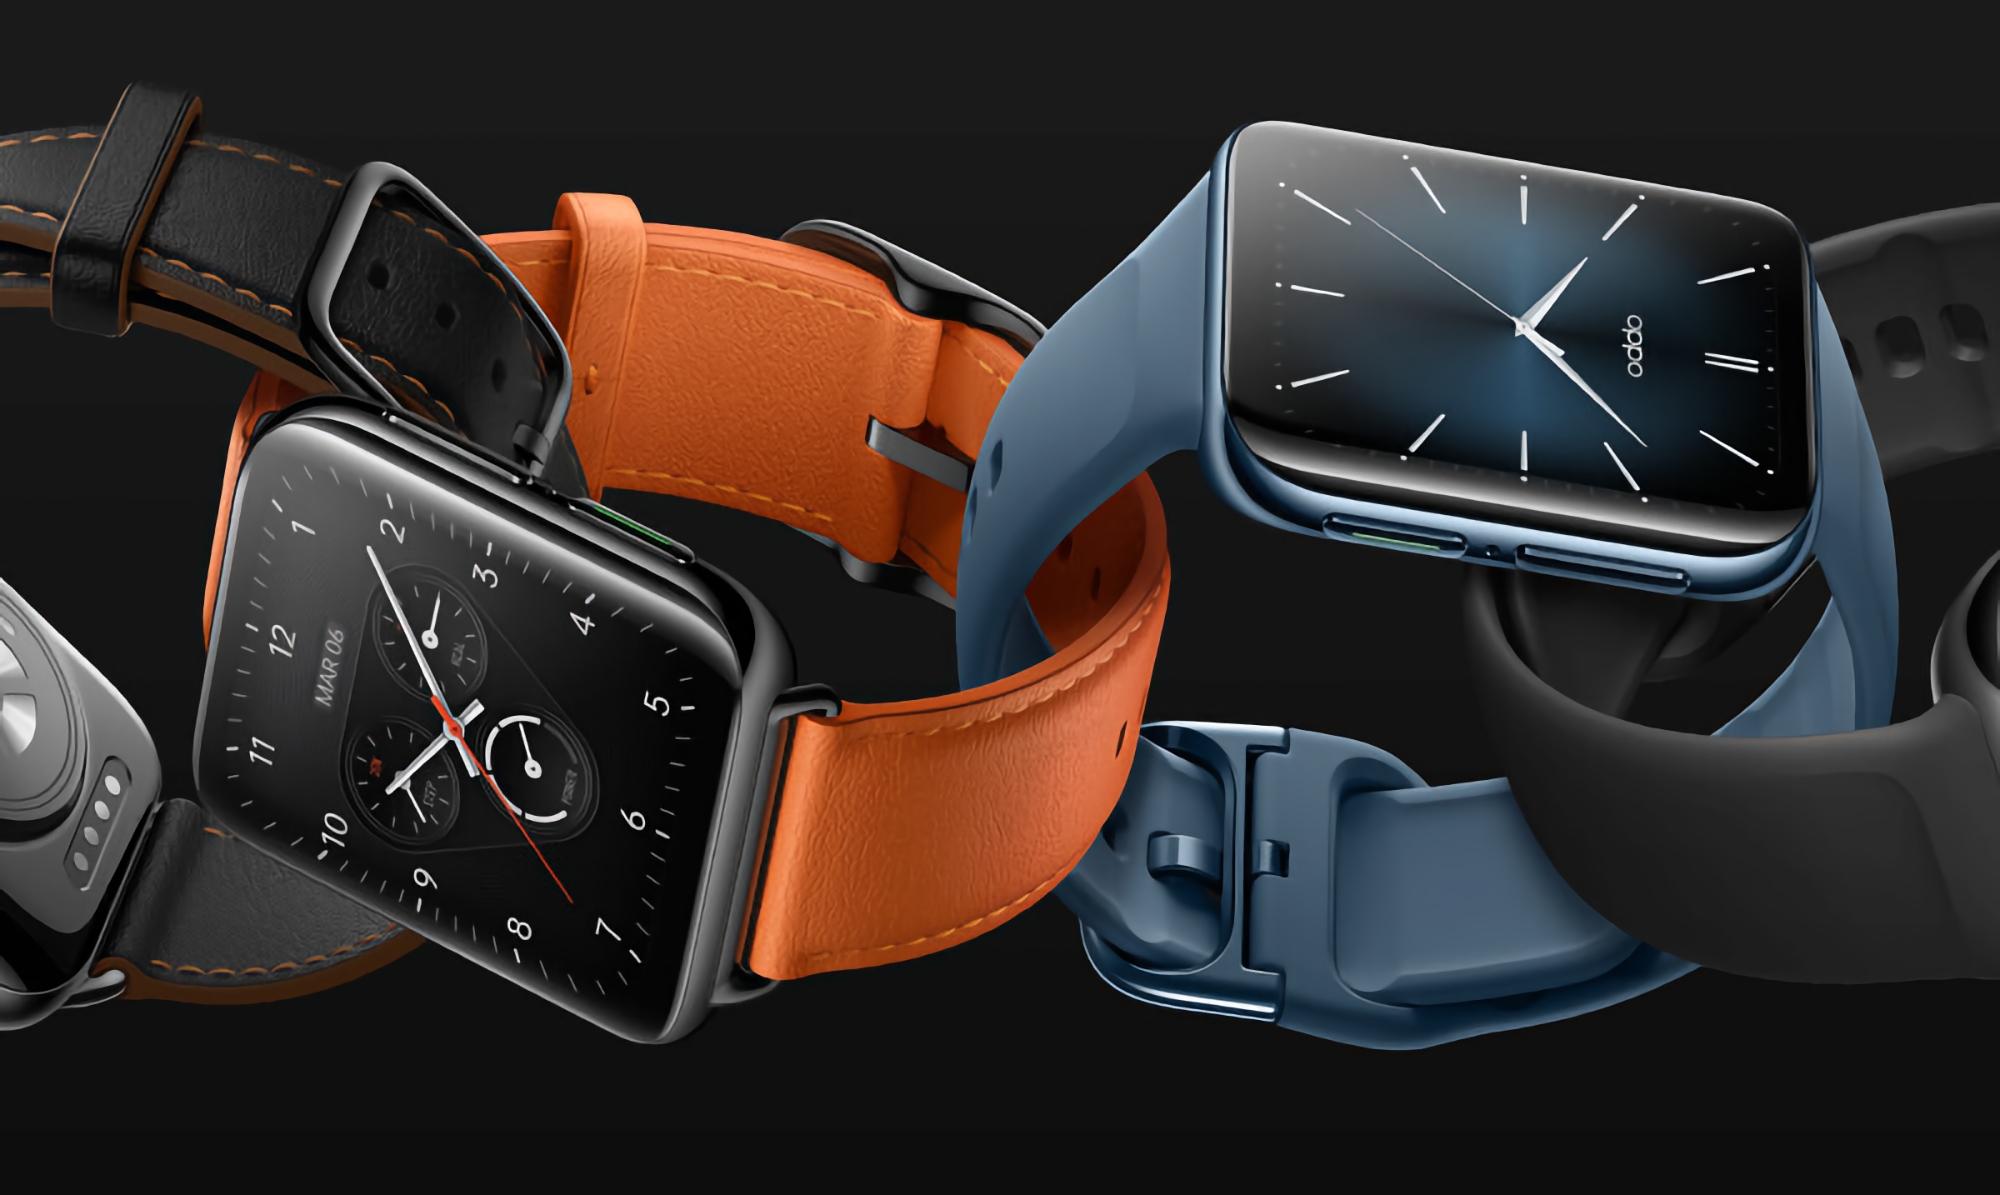 OPPO dokucza serii OPPO Watch 3: smartwatch będzie działał na platformie Qualcomm Snapdragon W5